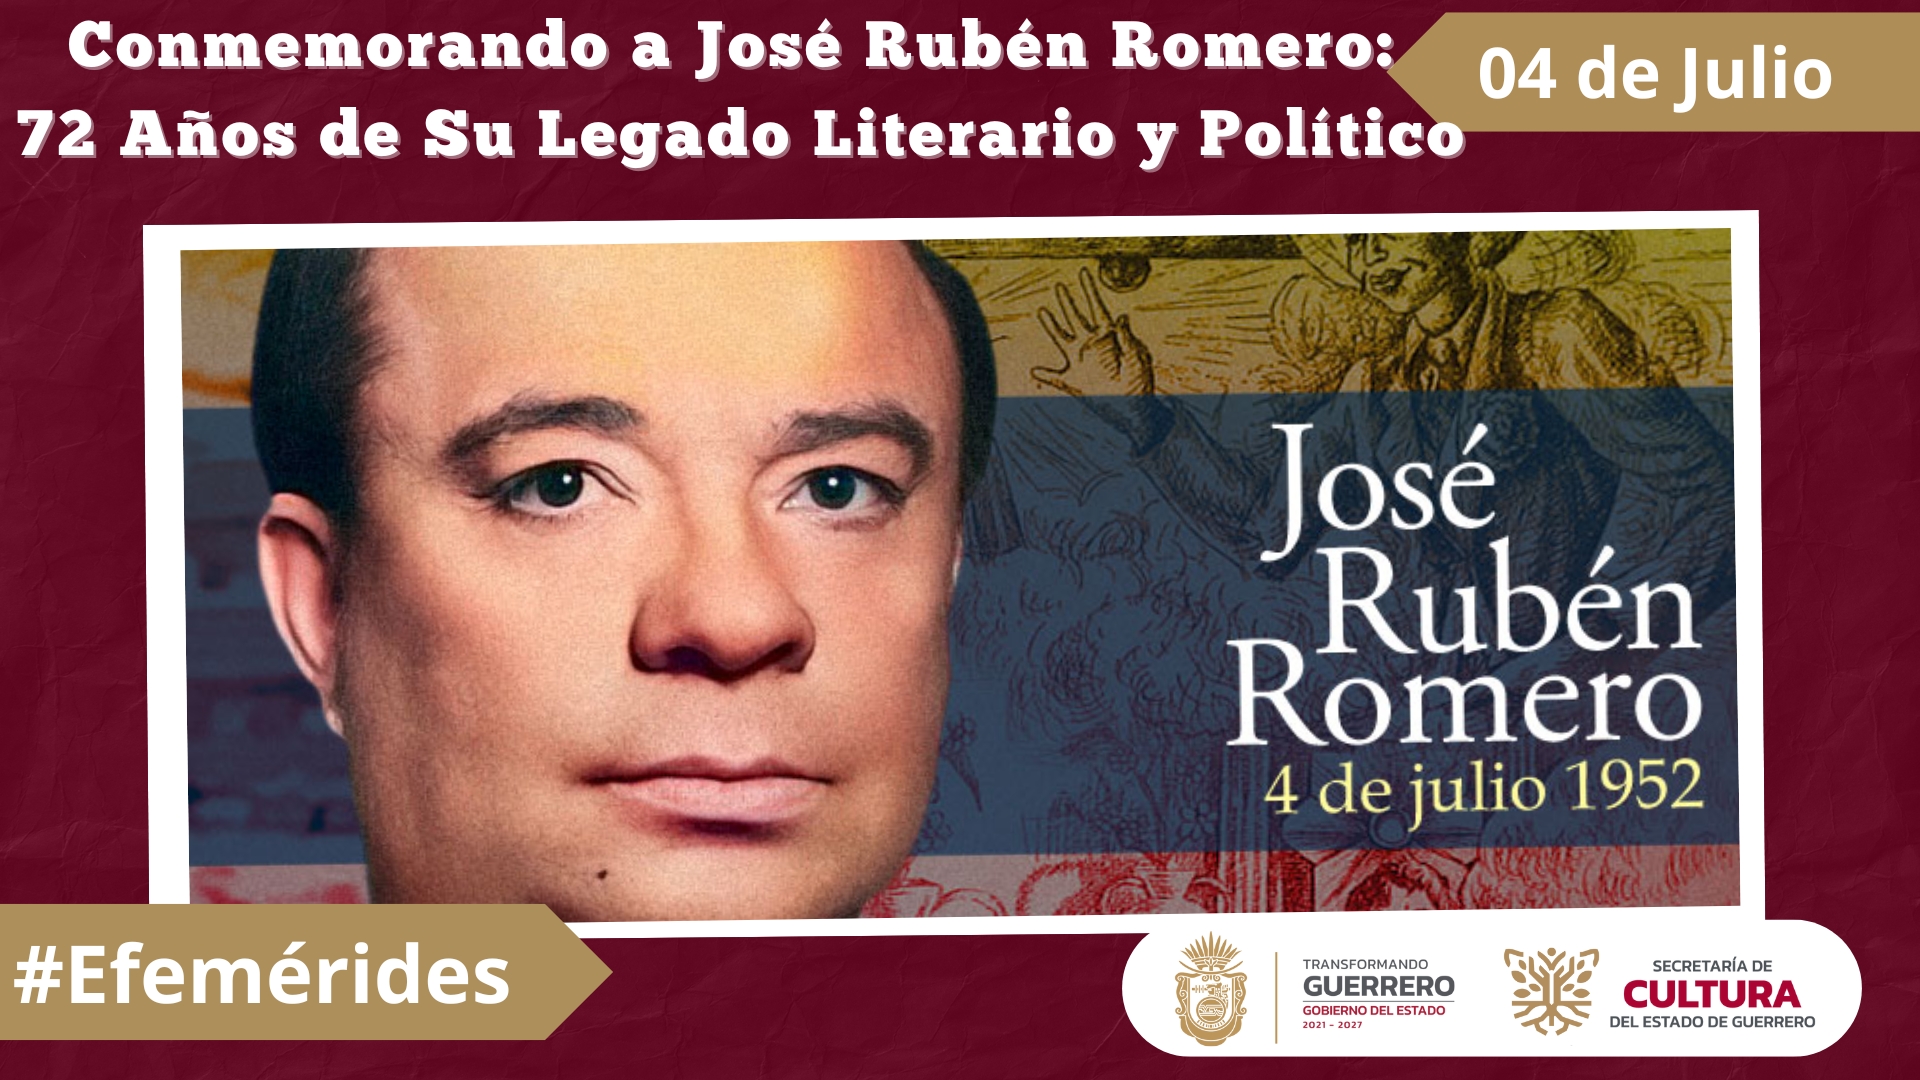 Conmemorando a José Rubén Romero 72 Años de Su Legado Literario y Político